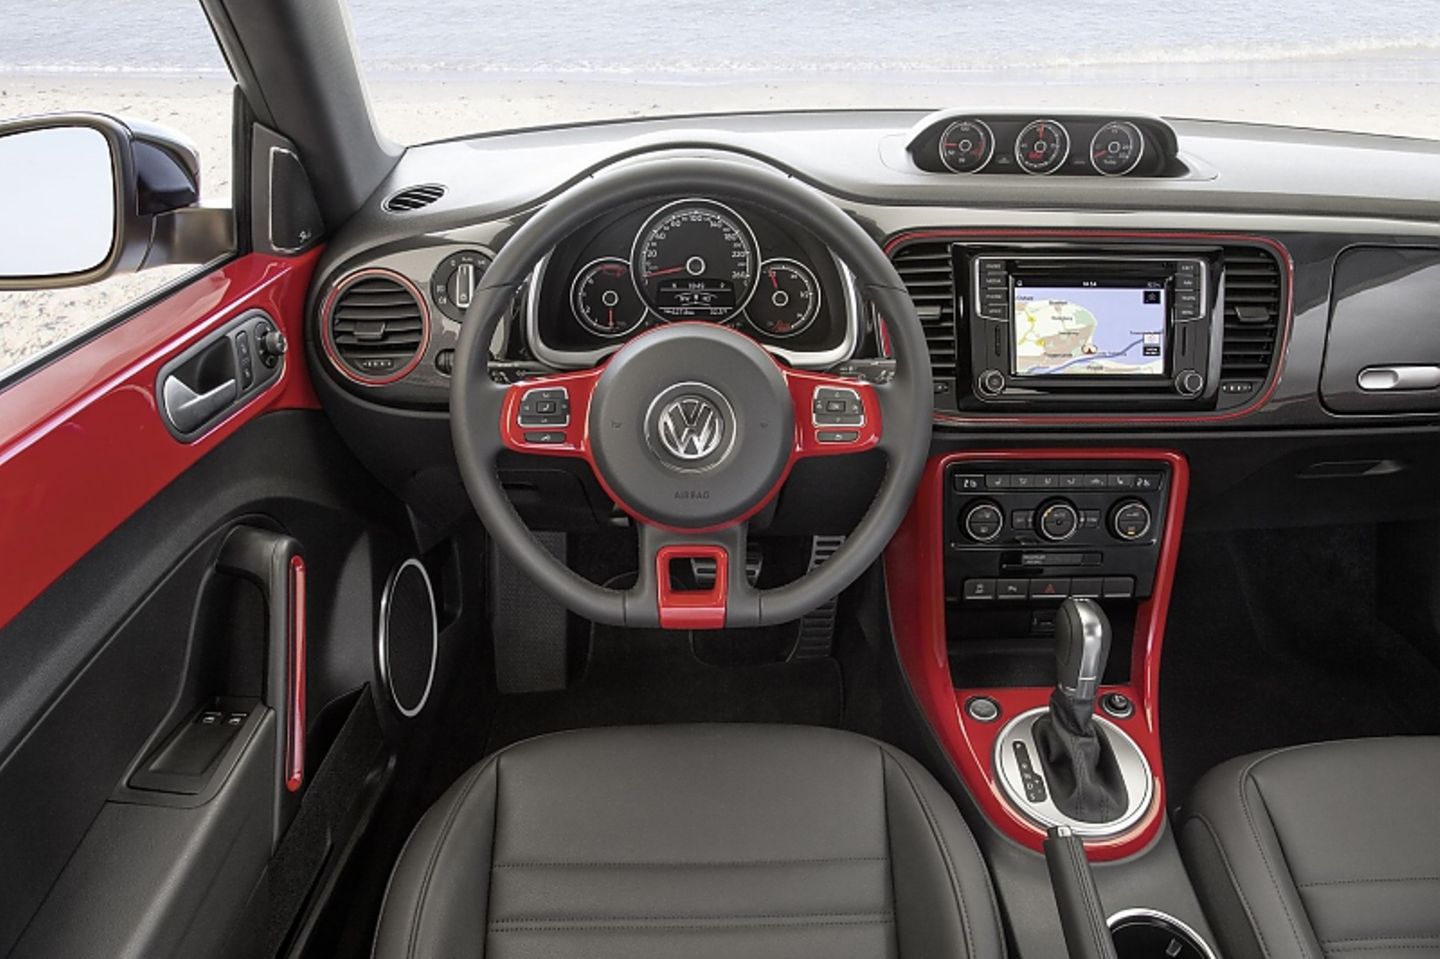 Cabrio: VW setzt den Rotstift an – sterben die Oben-Ohne-Autos jetzt aus?